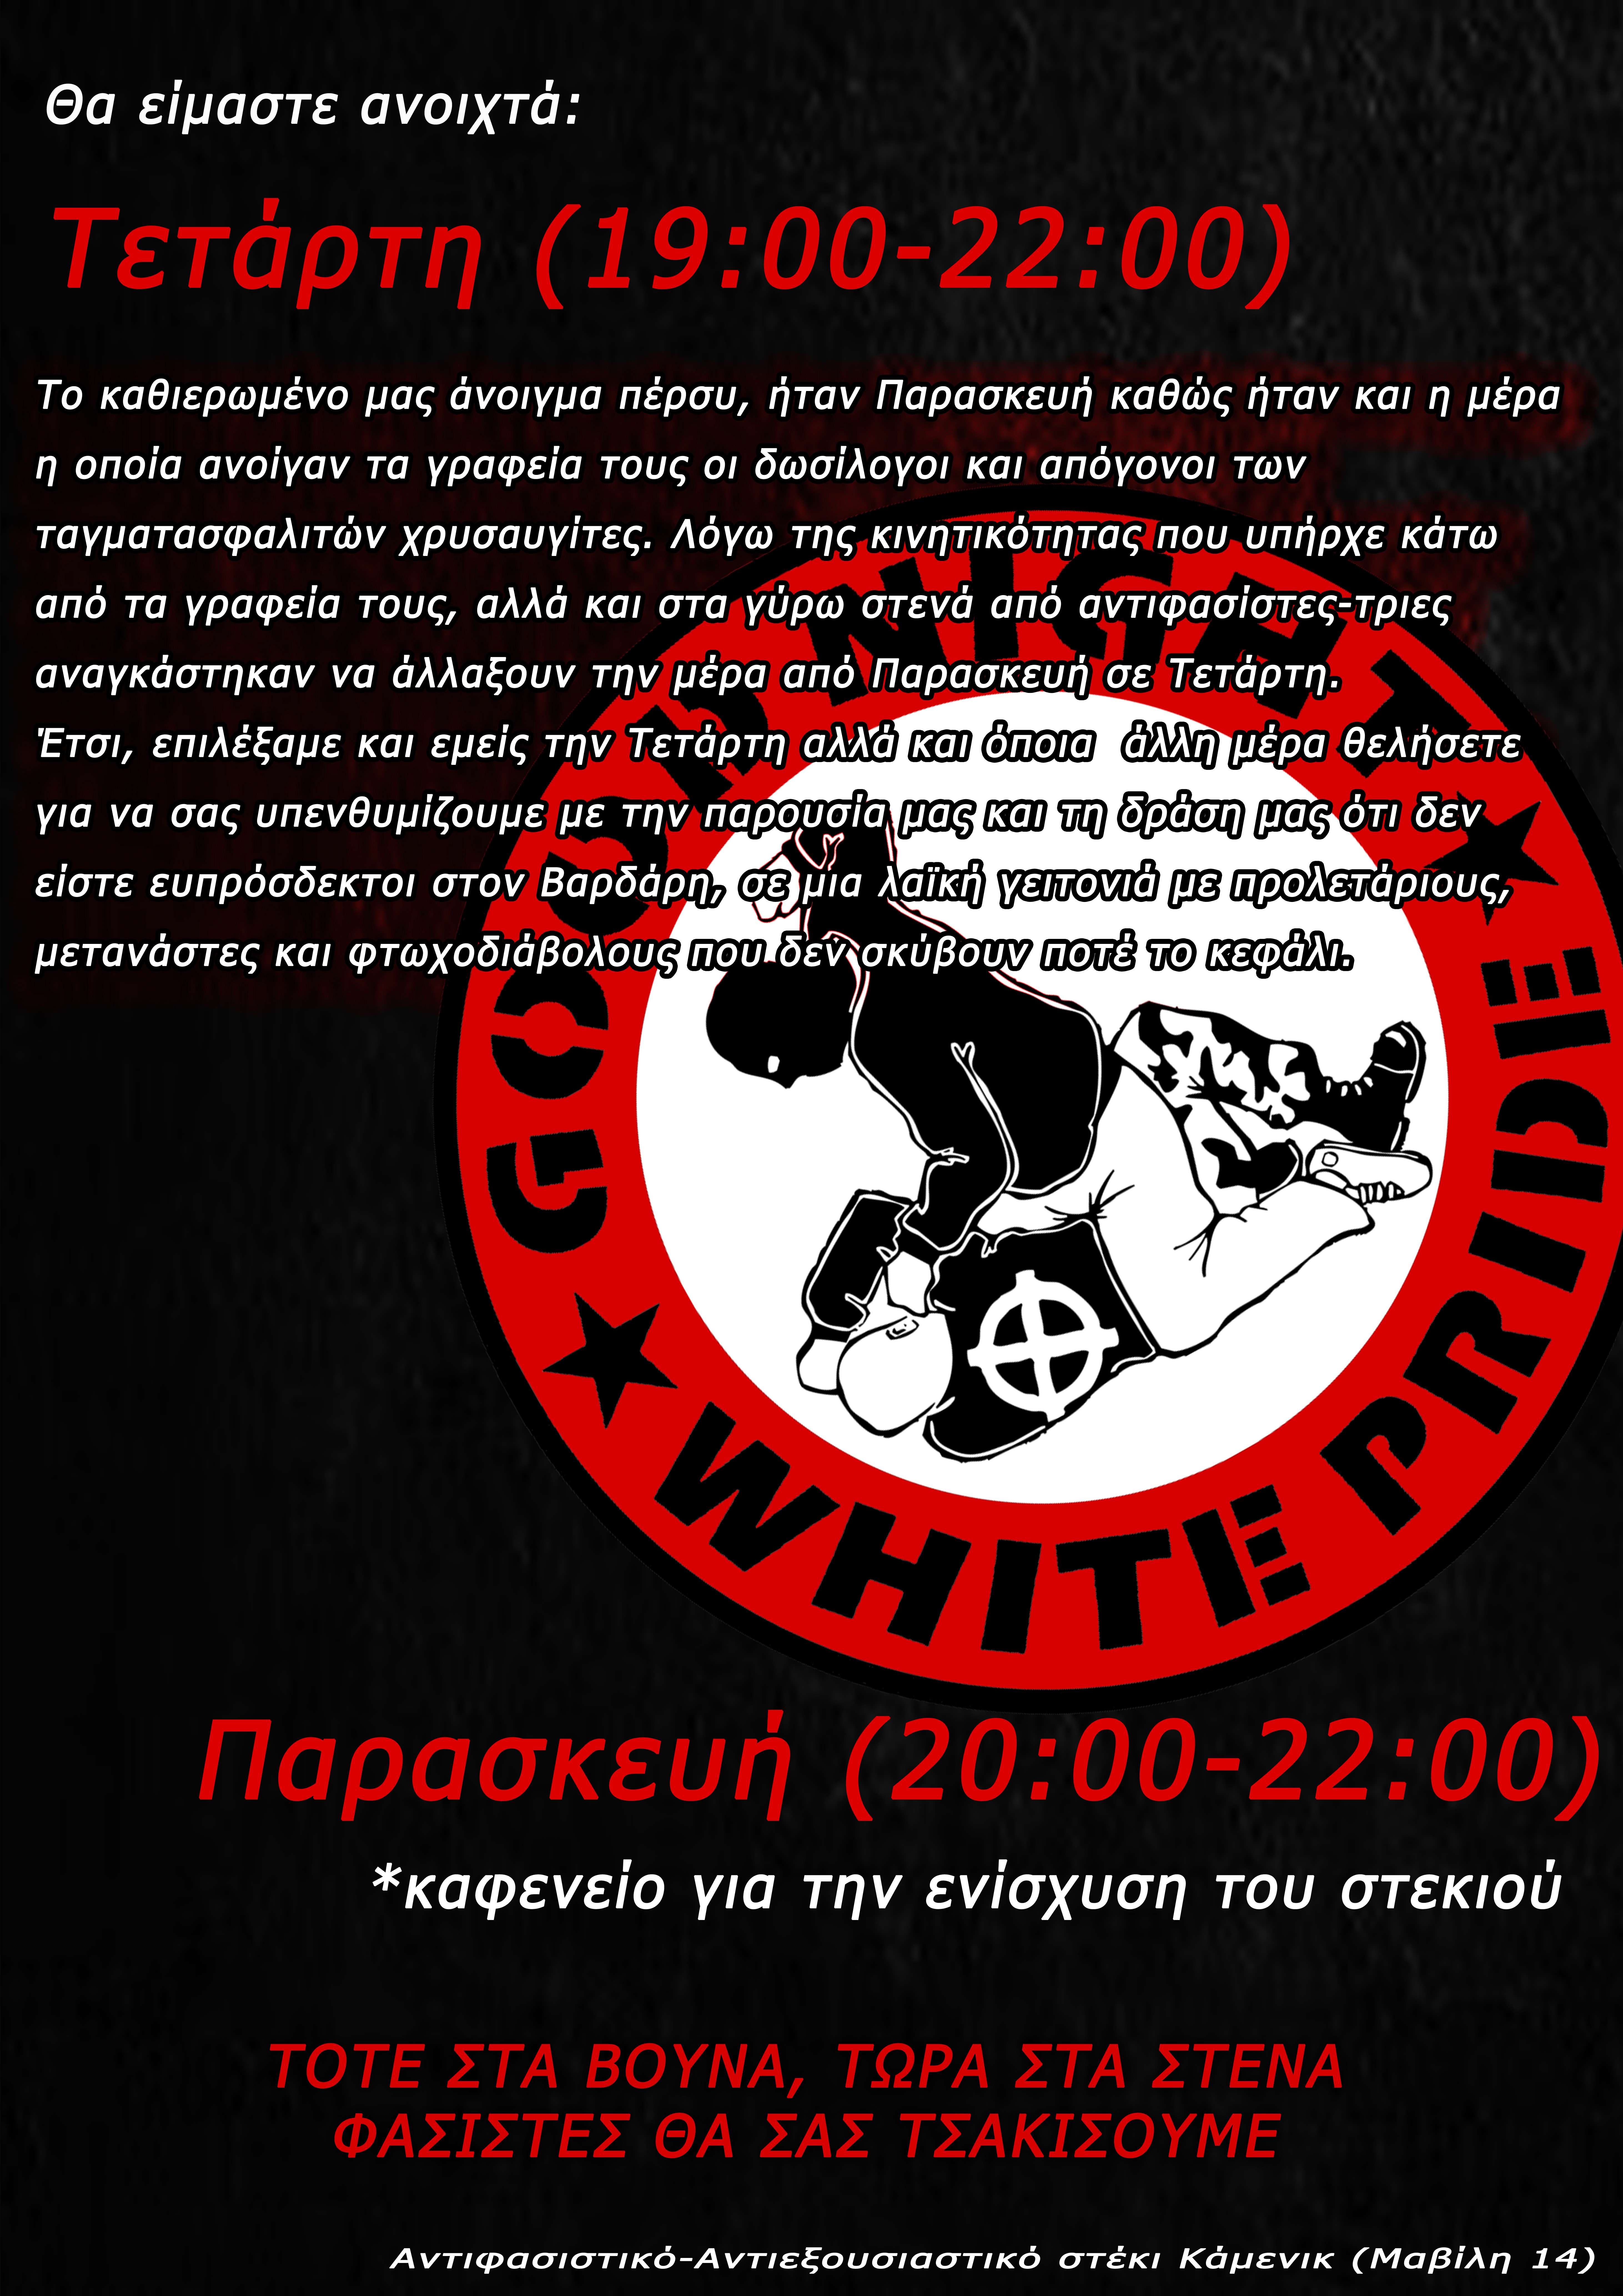 Θεσσαλονίκη: Εβδομαδιαίο πρόγραμμα αντιφασιστικού-αντιεξουσιαστικού στεκιού ΚΑΜΕΝΙΚ [αφίσα]